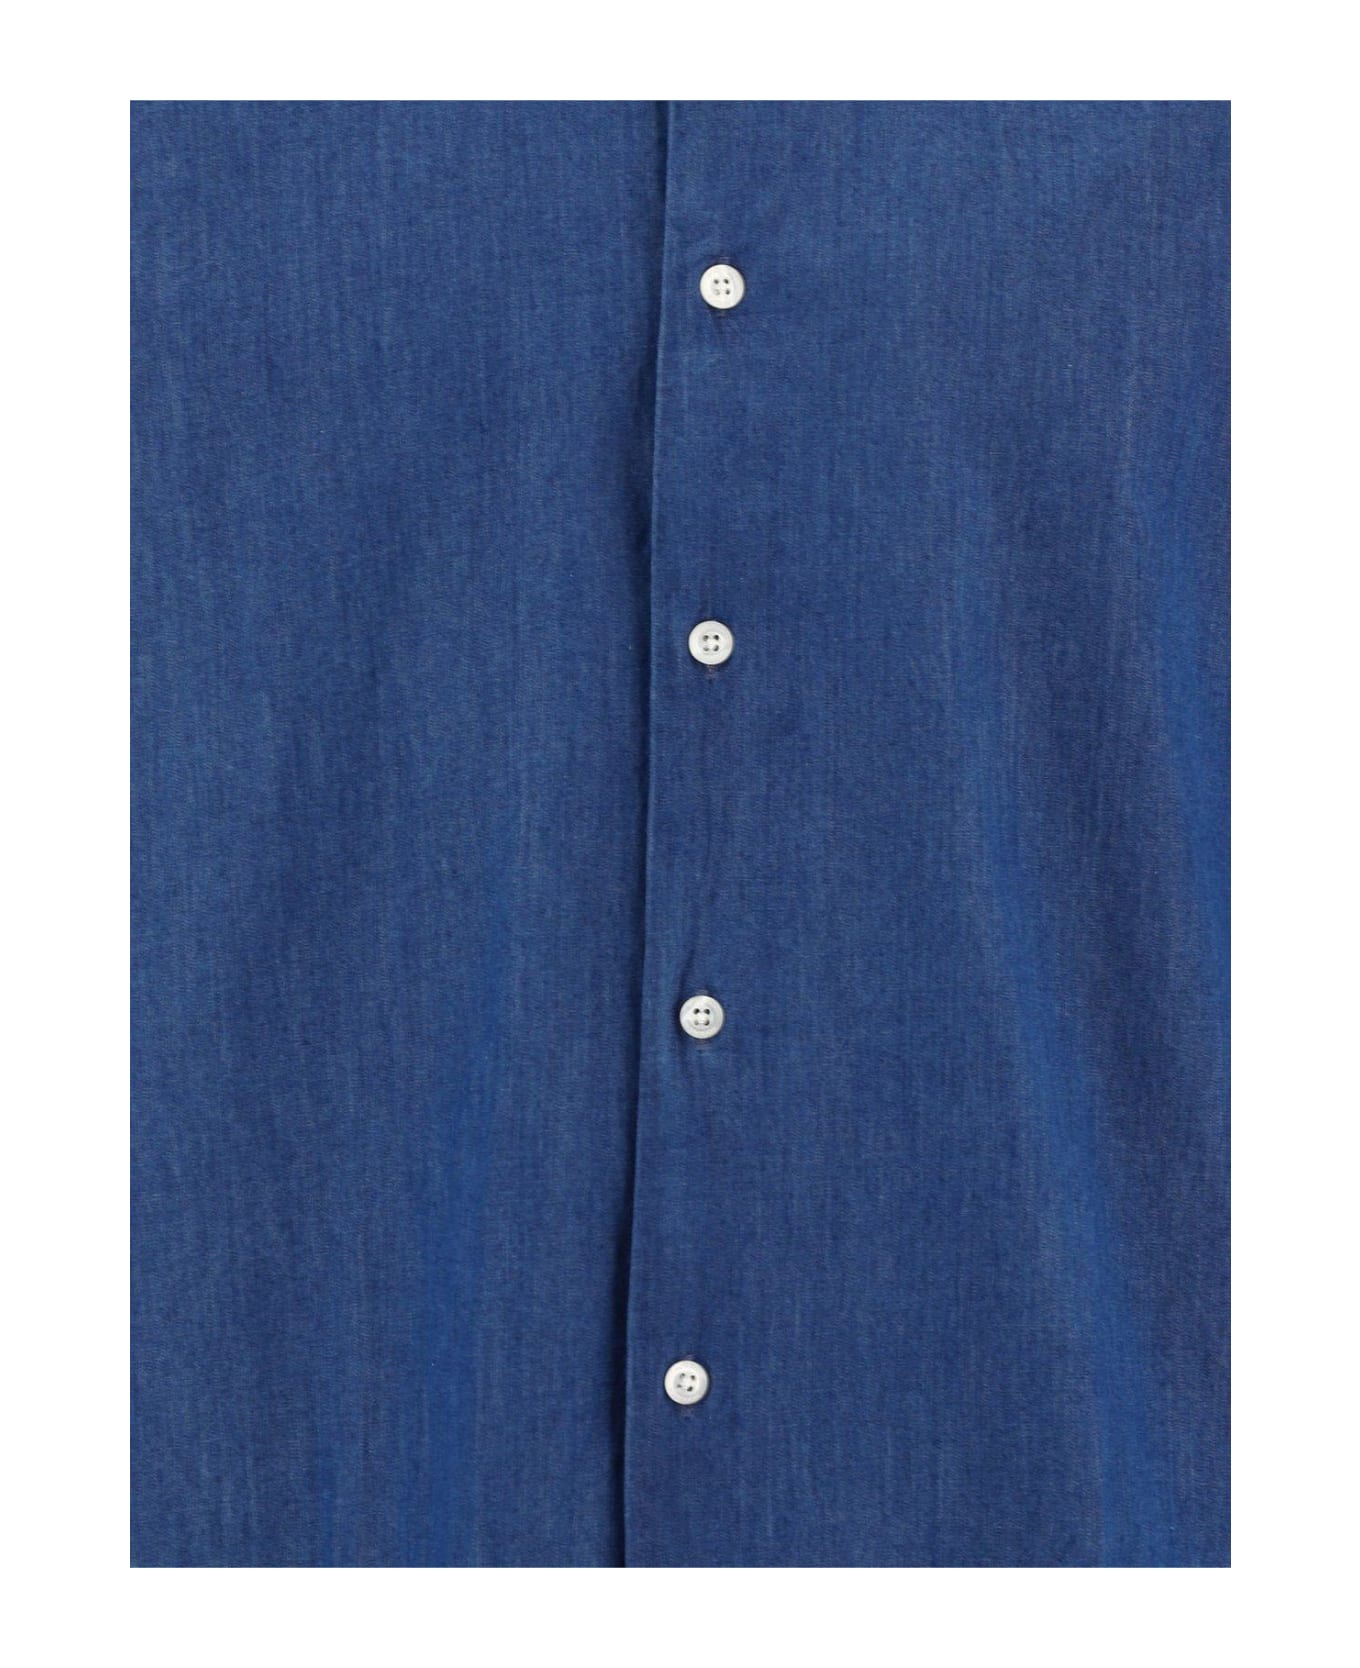 Woolrich Buttoned Long-sleeved Shirt - Light Indigo